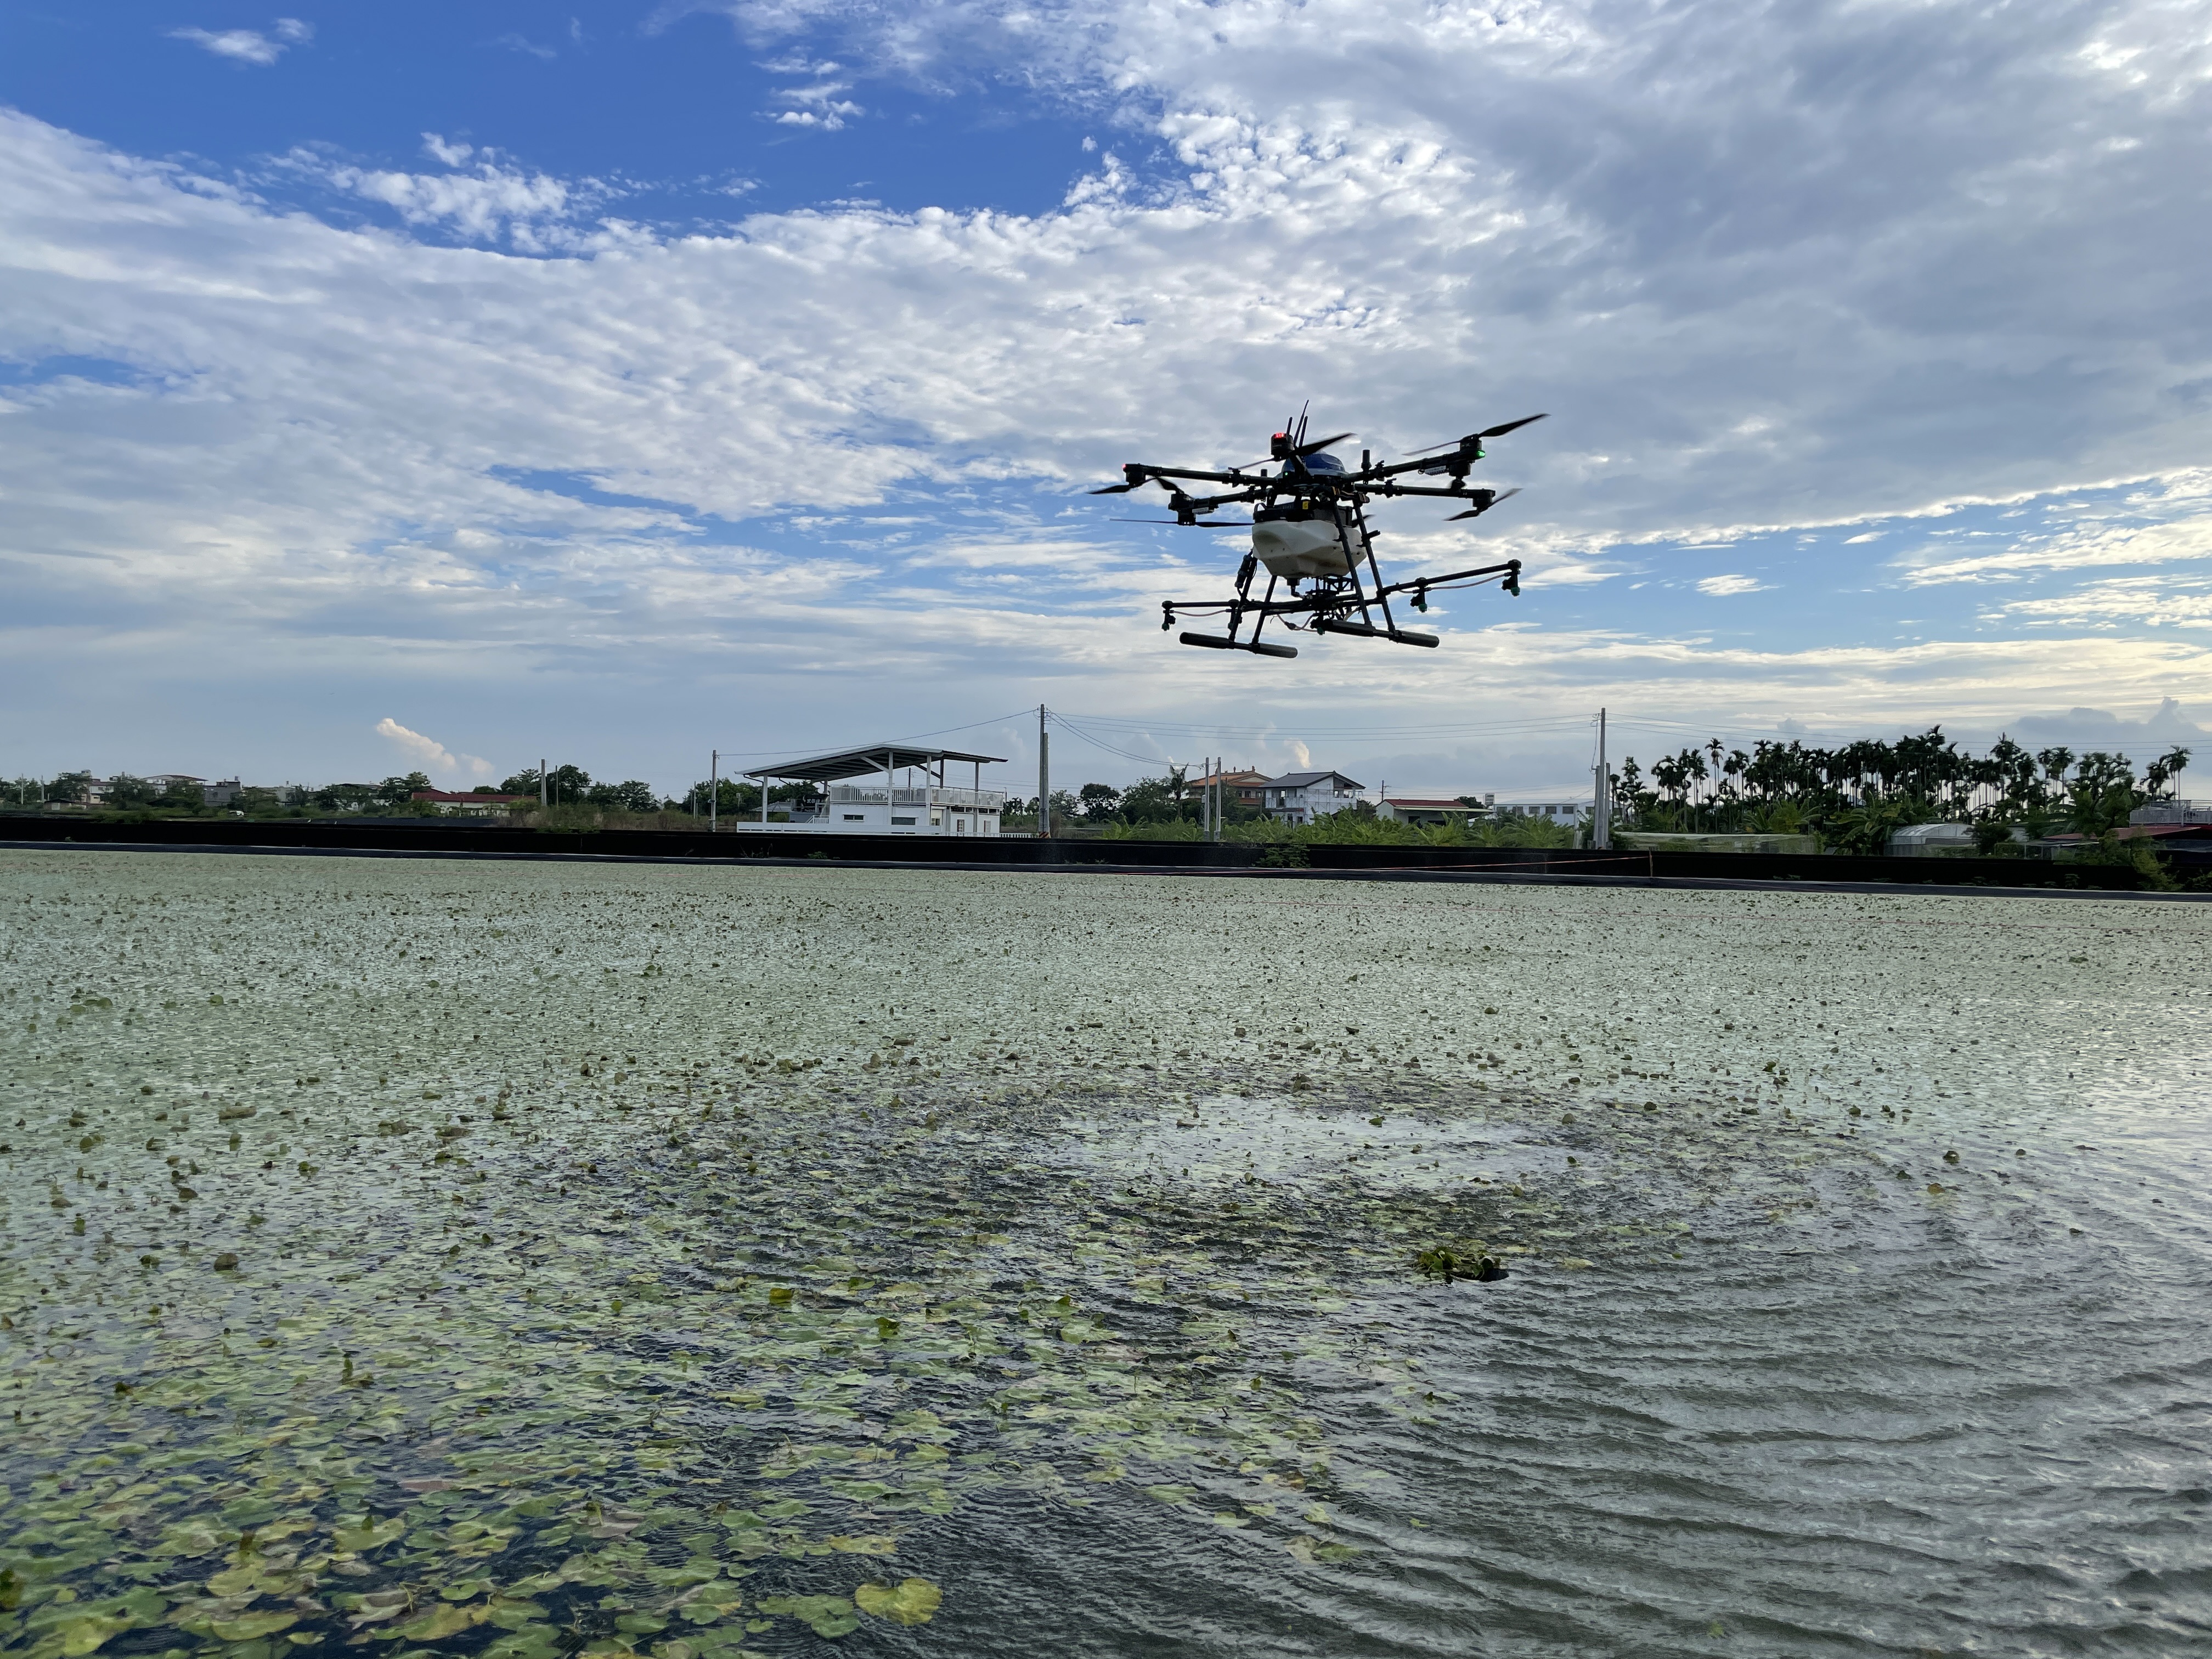 圖一、無人機於水蓮作物精準施藥技術應用無人機於水蓮田區噴施蘇力菌之情形。